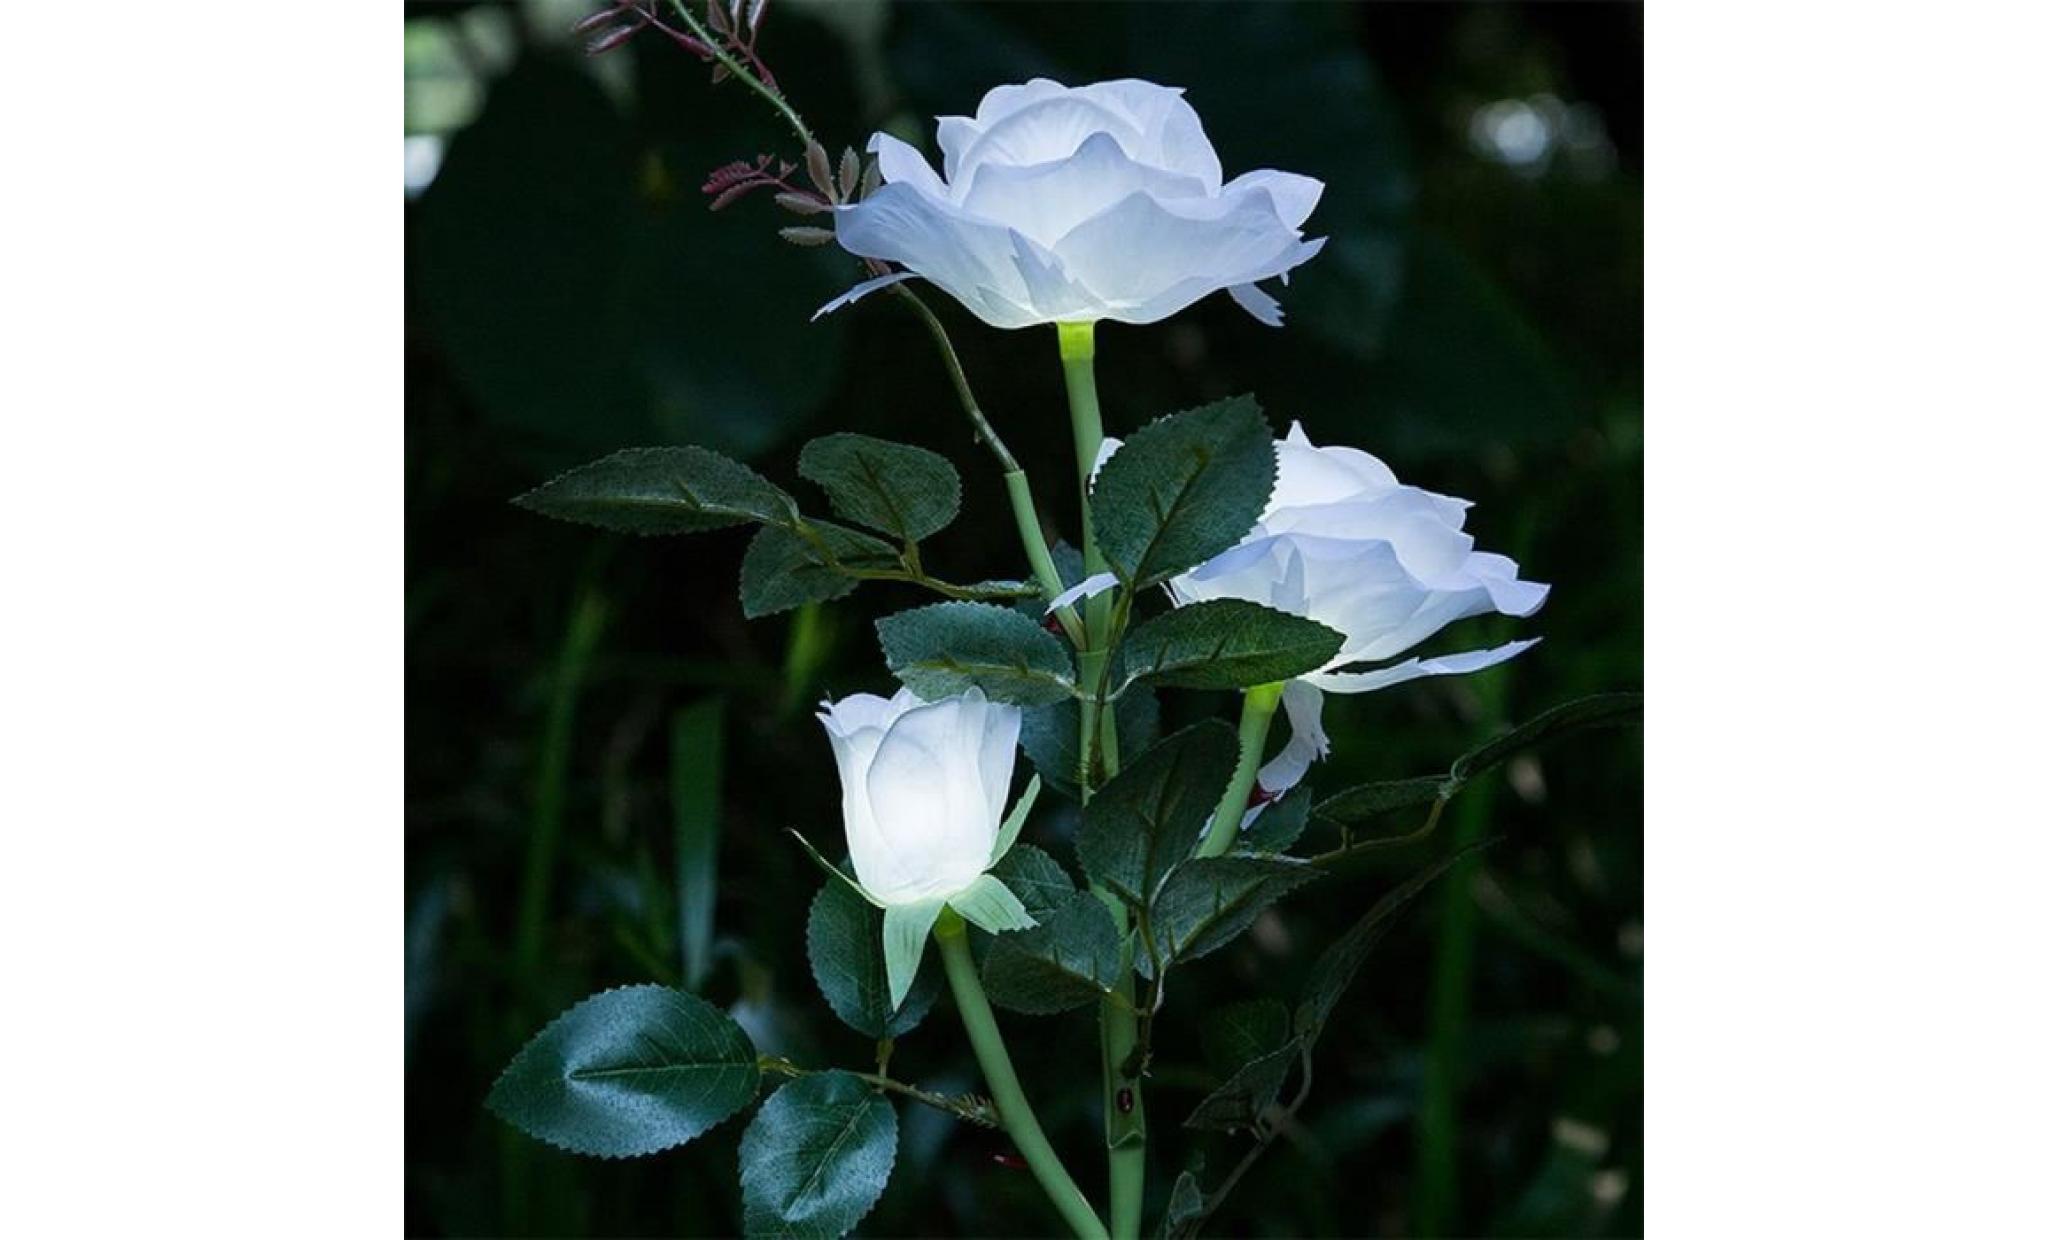 lampe dé jardin 3 roses blanches, lampes solaires, lampes à gazon gd18 pas cher